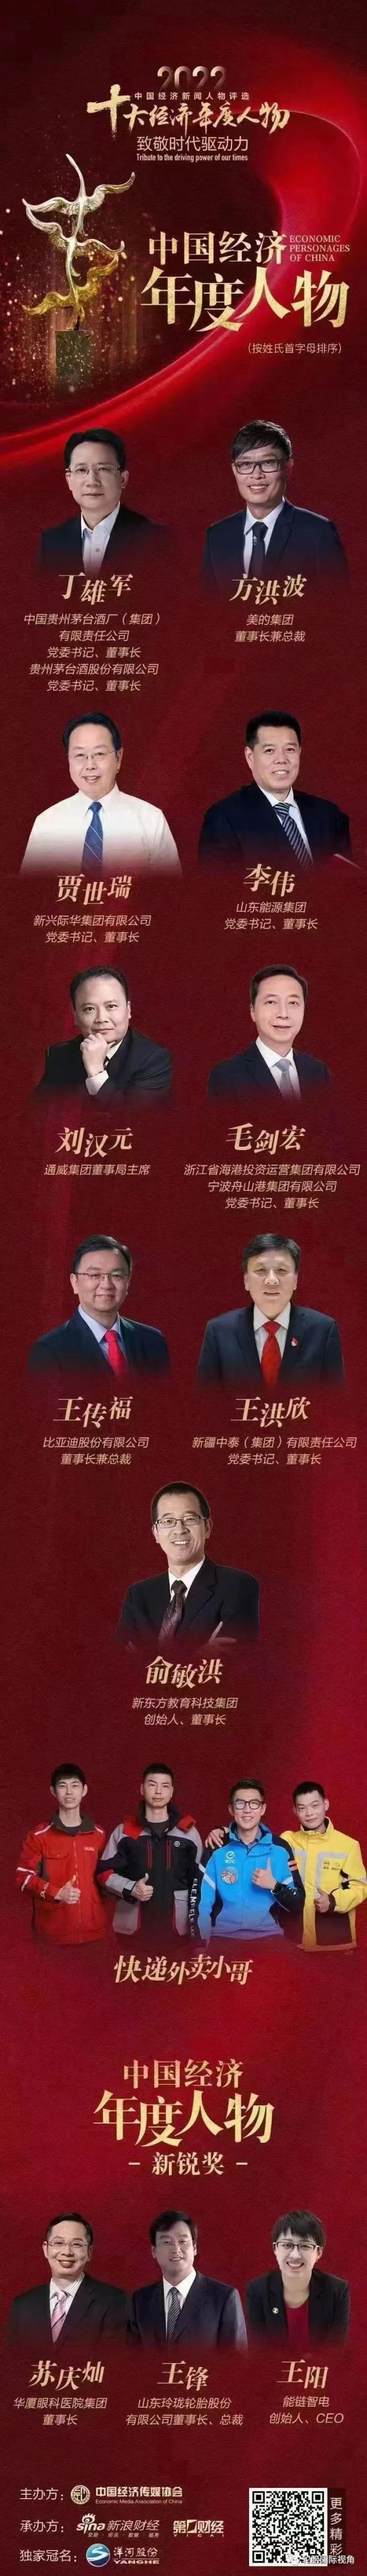 玲珑轮胎董事长王锋荣获“中国经济年度人物-新锐奖”